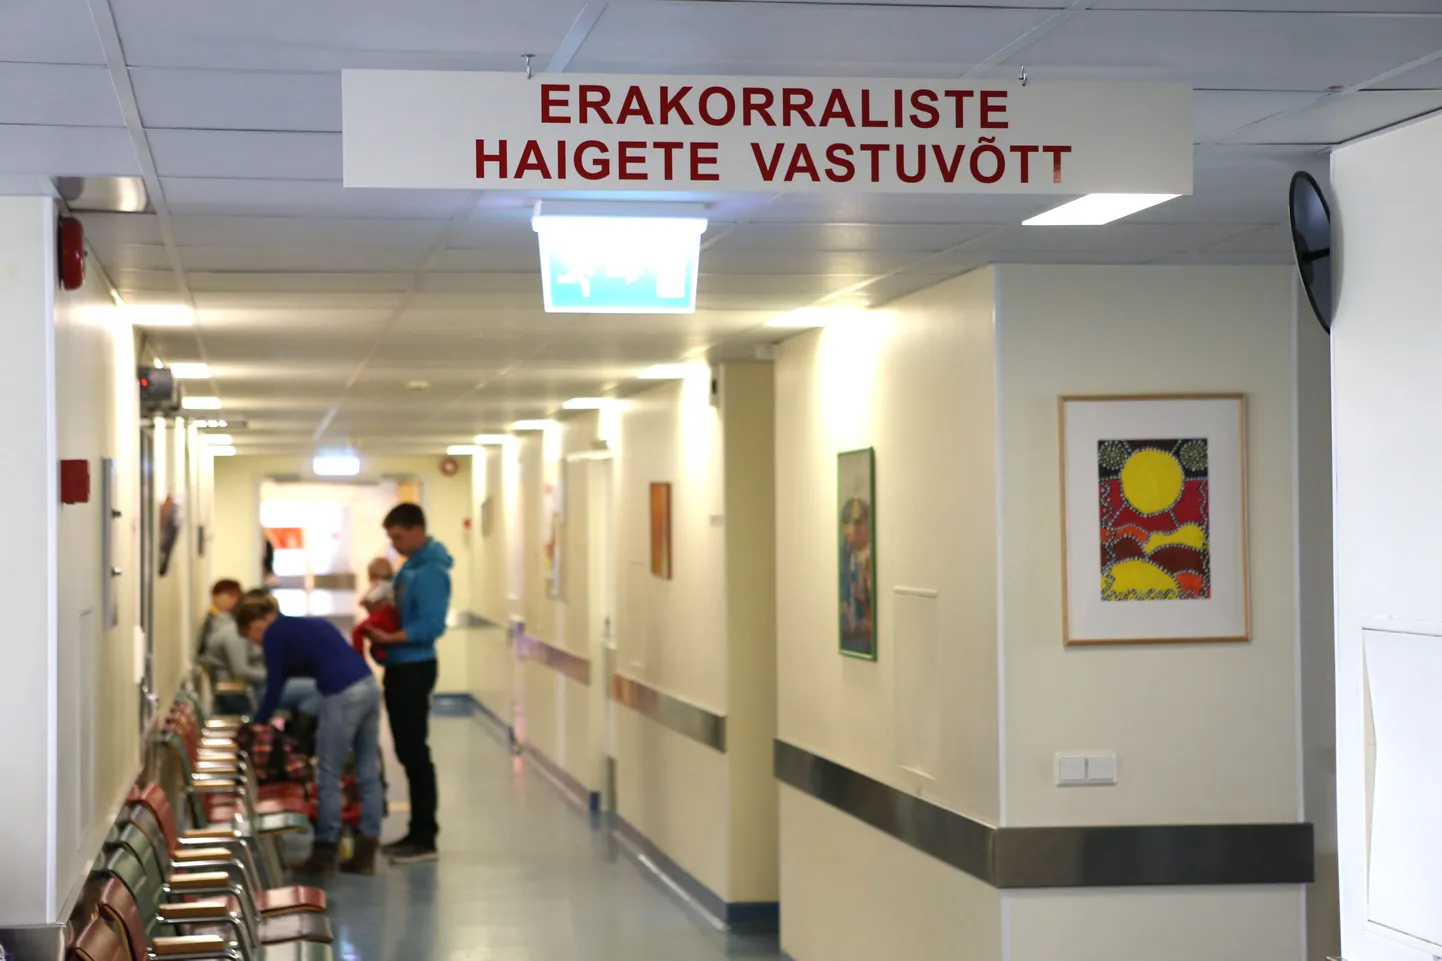 Таллиннская детская больница.